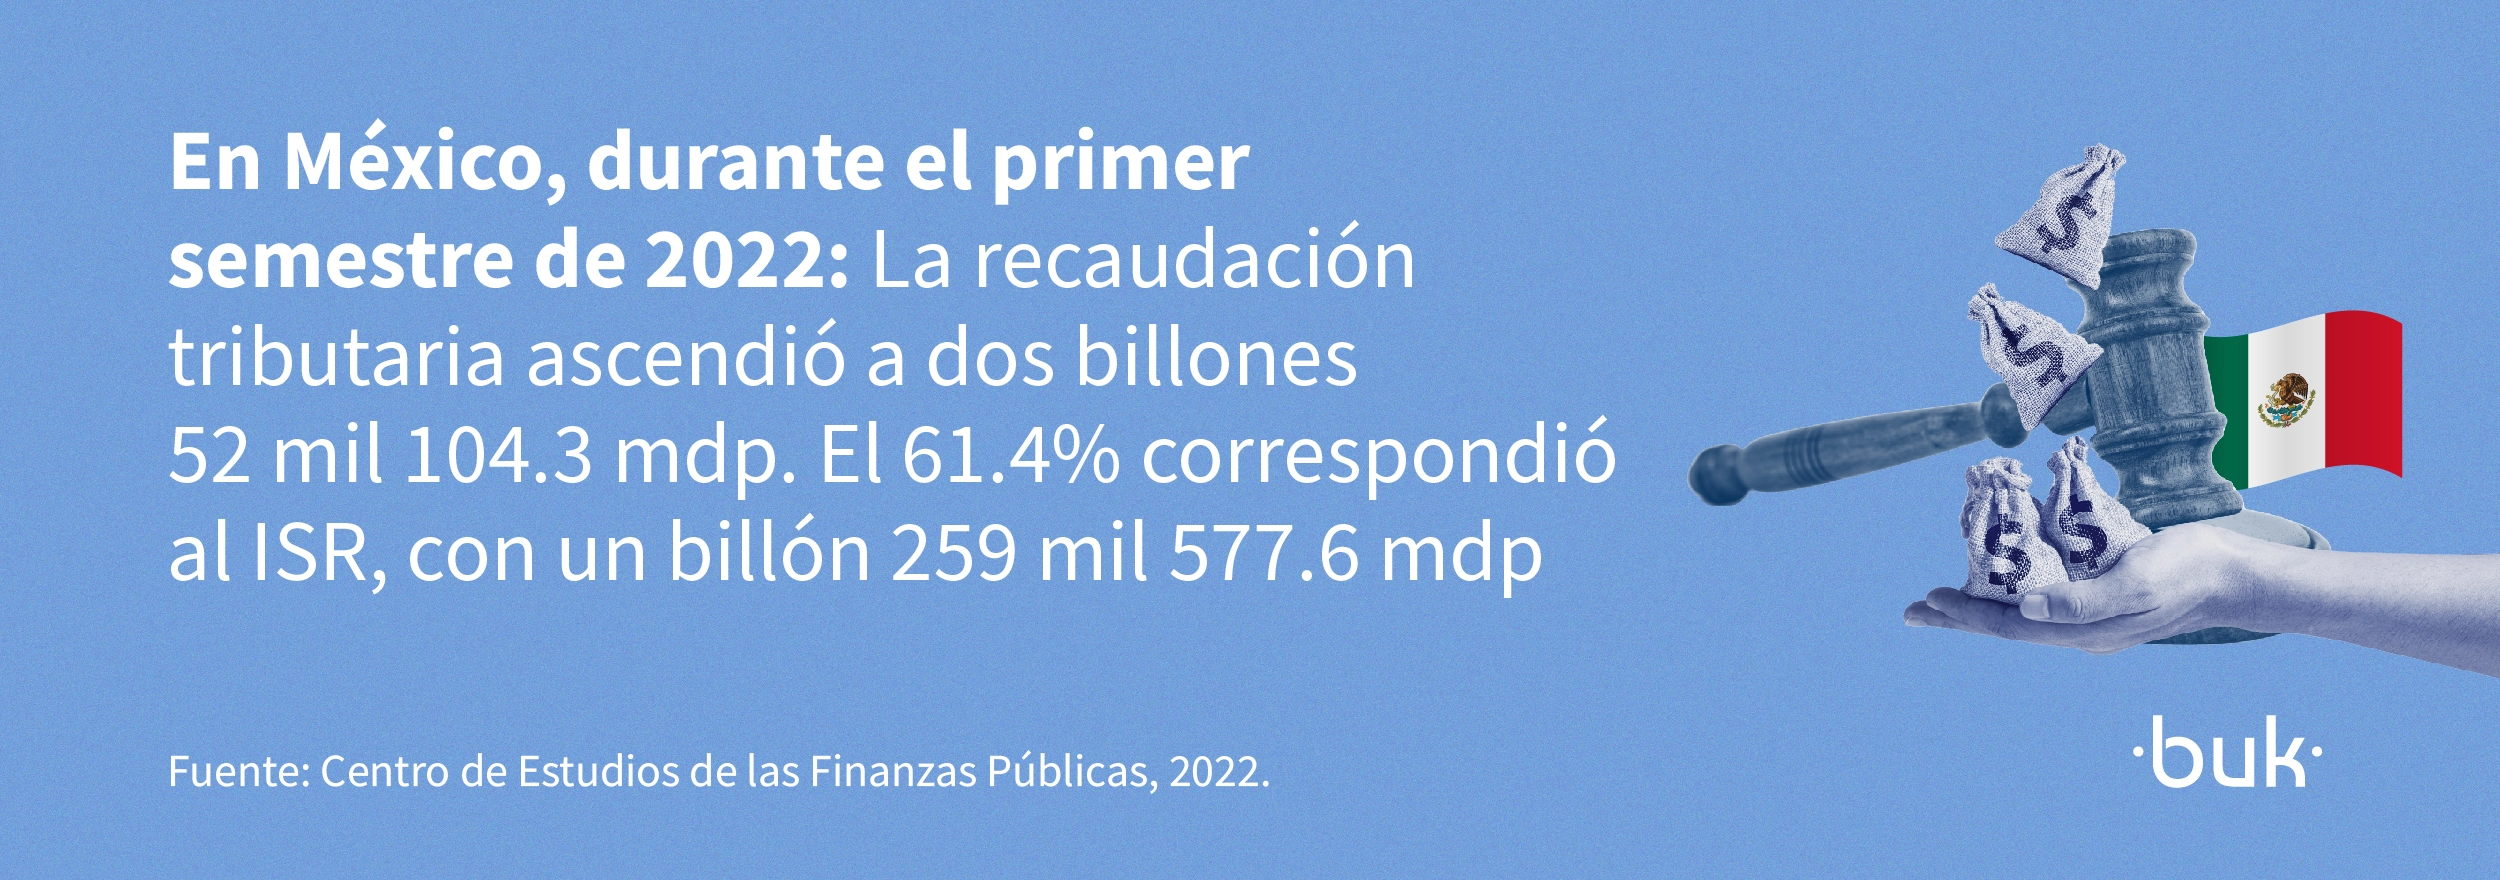 en mexico durante el primer semestre de 2023 la recaudacion tributaria ascendio a dos billones y el 61 punto por ciento correspondio al isr 